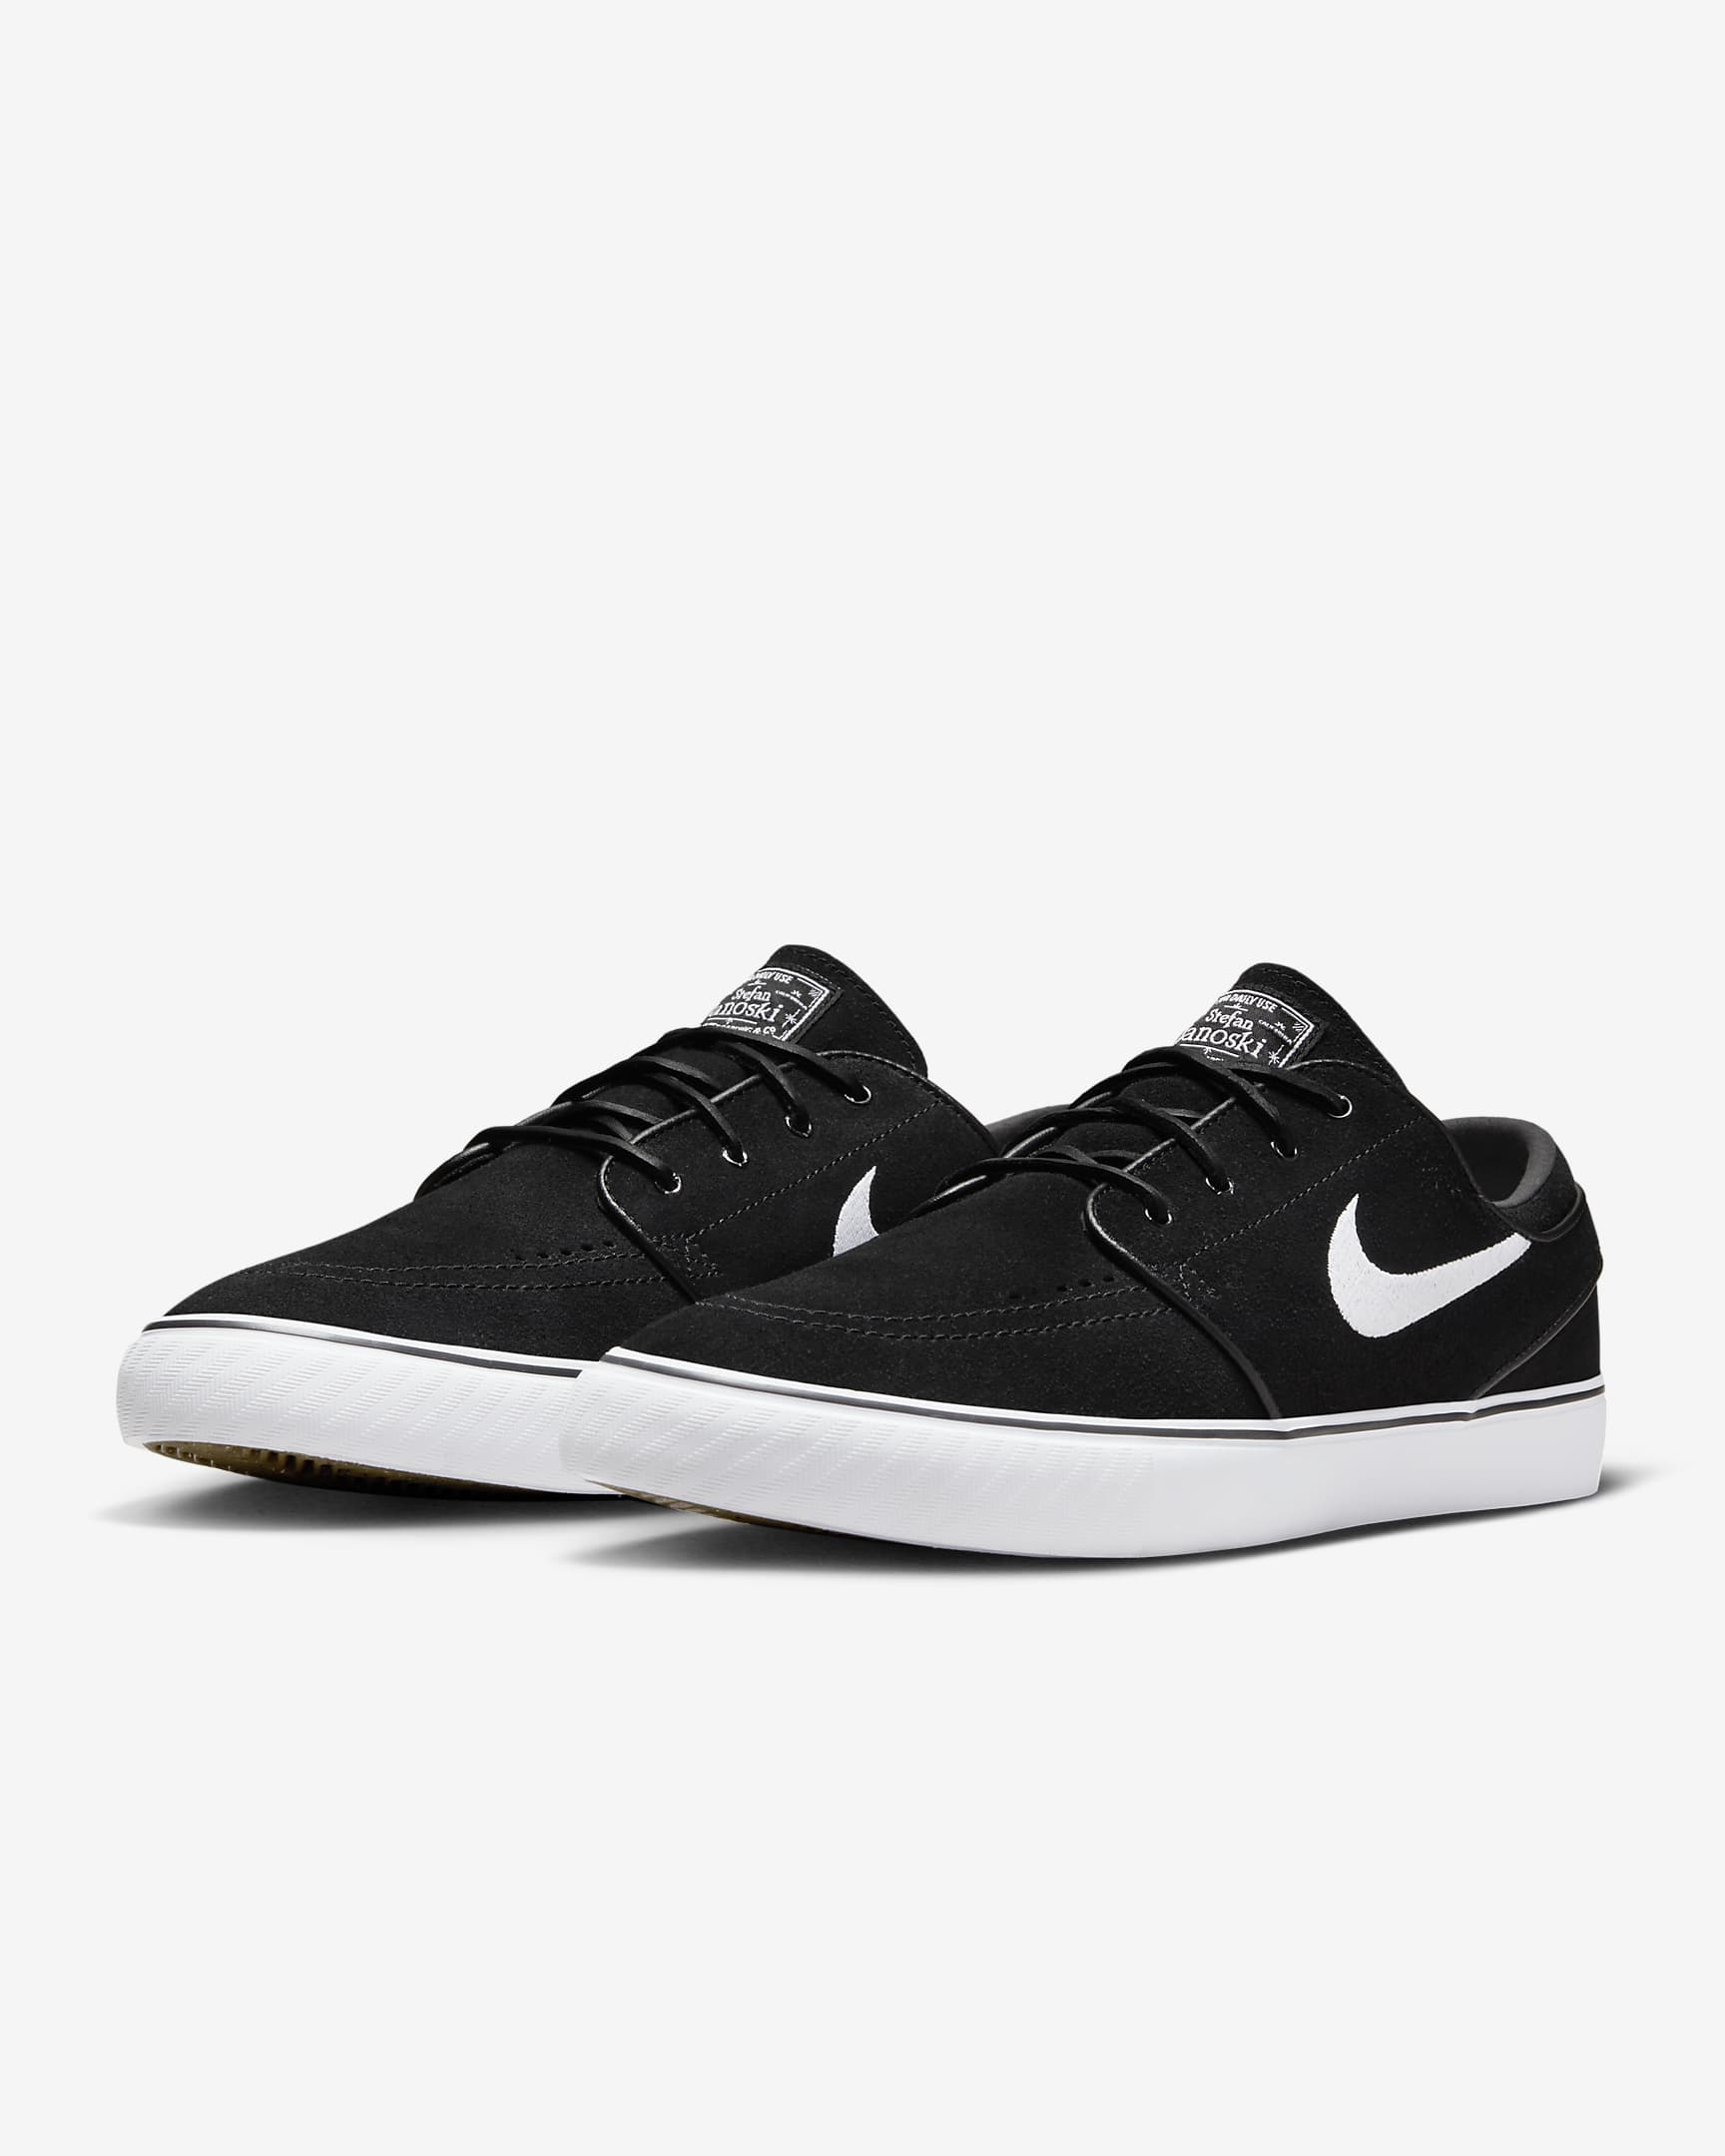 Nike SB Zoom Janoski OG+ deszkás cipő - Fekete/Fekete/Fehér/Fehér